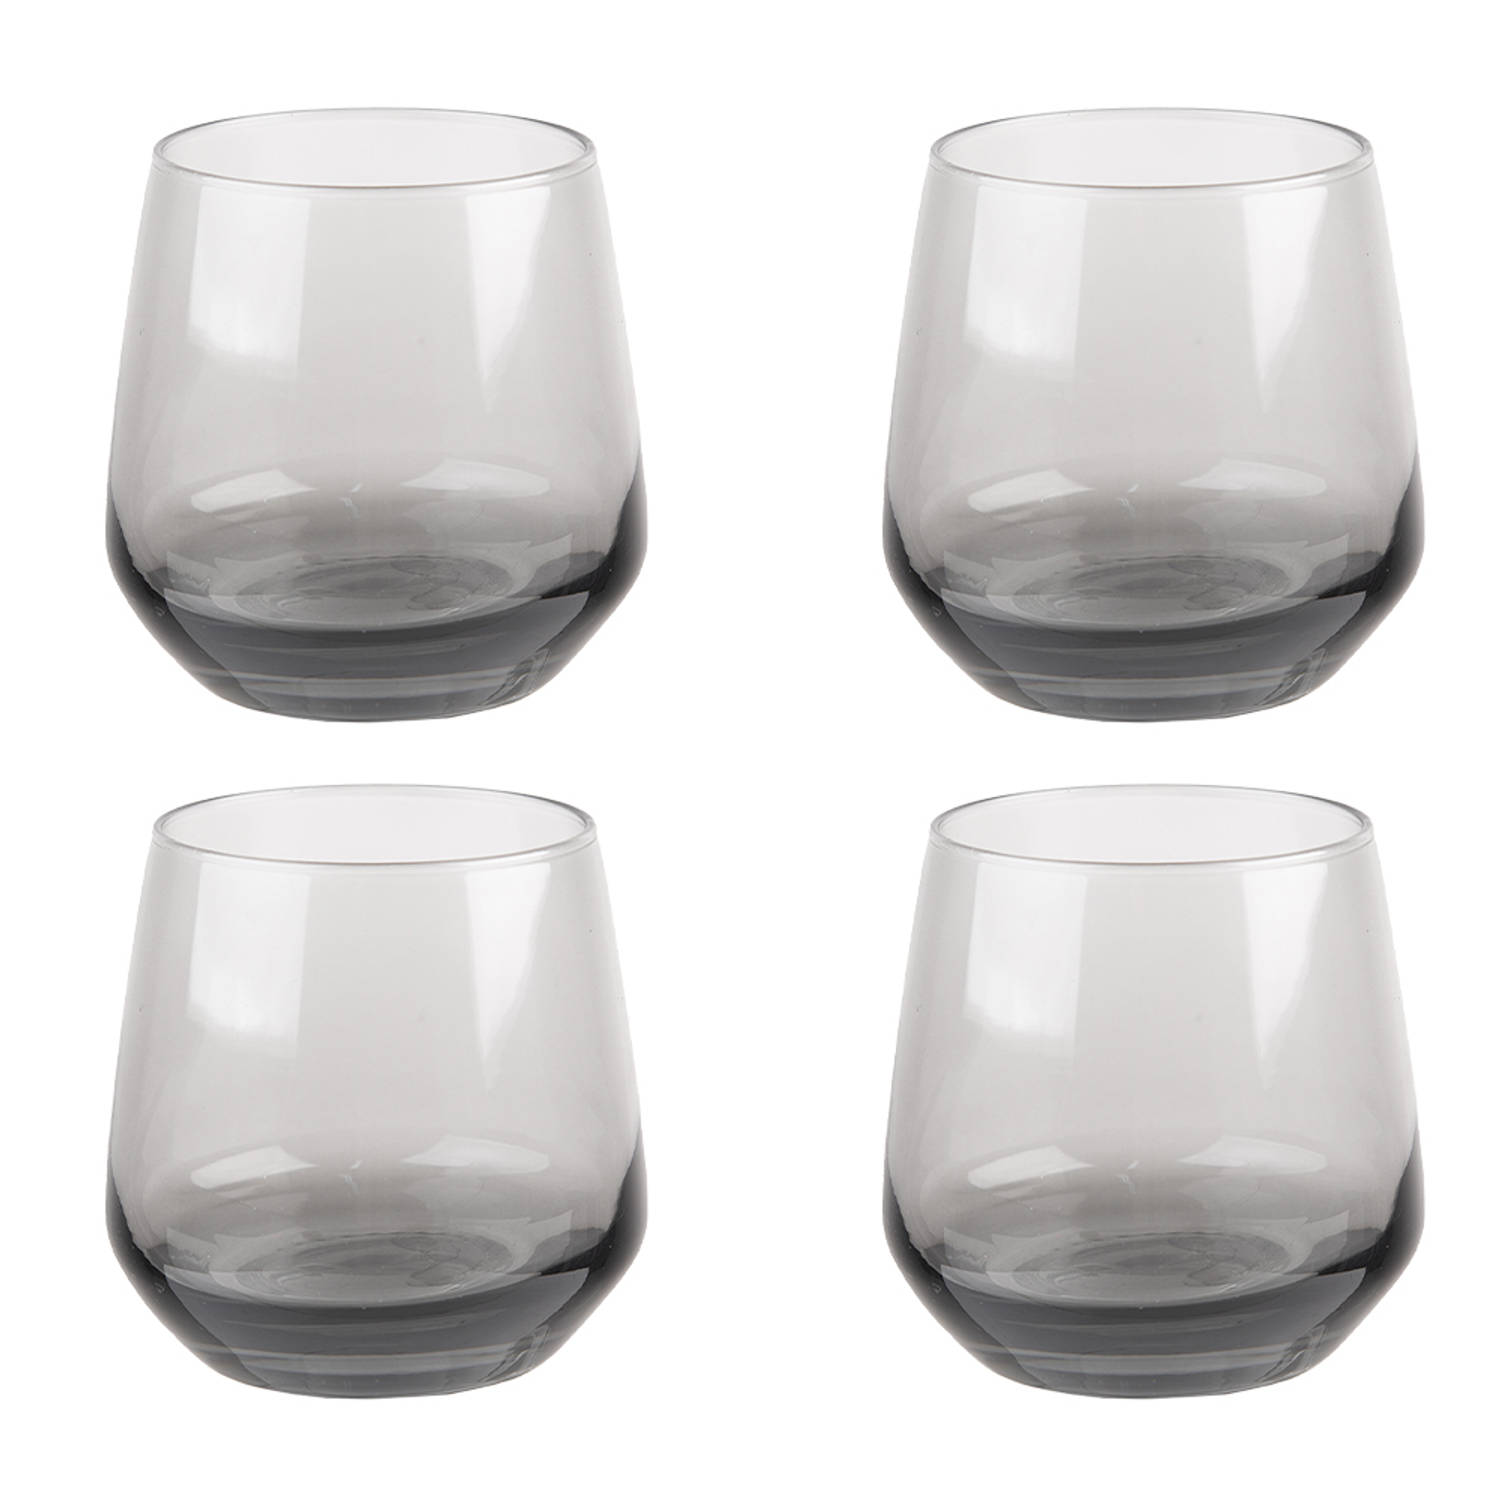 HAES DECO - Waterglas, Drinkglas set van 4 glazen - inhoud glas 310 ml - formaat glas Ø 7x9 cm - Waterglazen, Drinkglazen